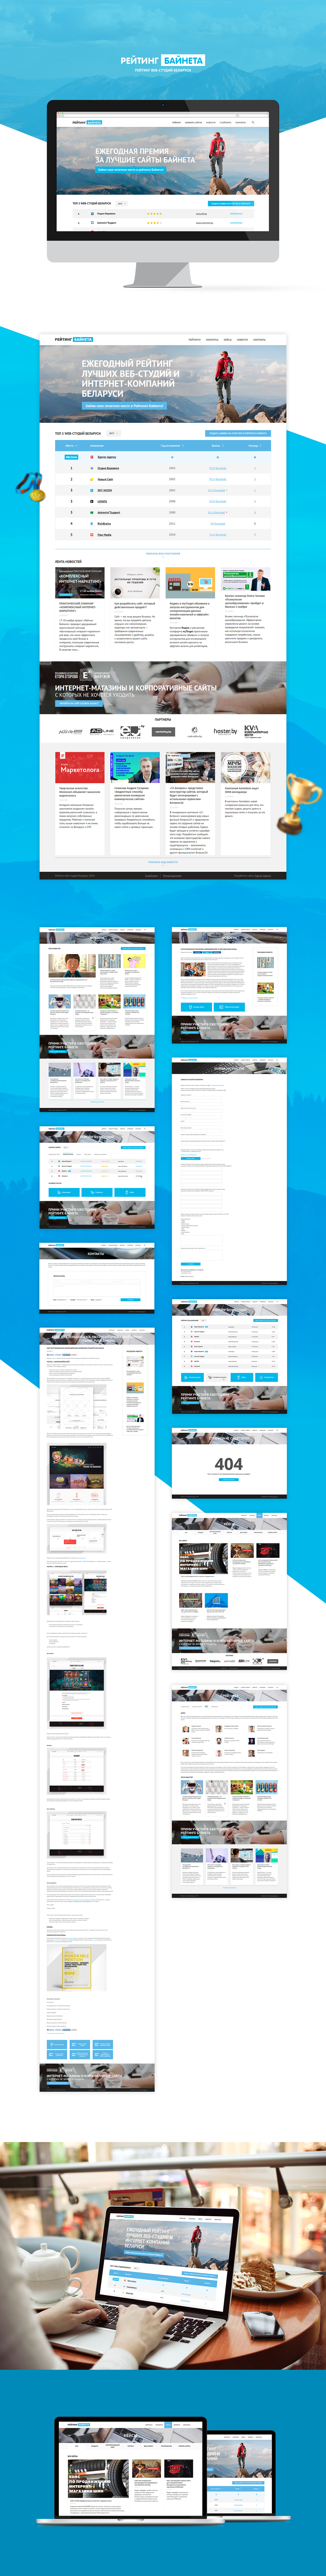 Egorovagency Egorov Agency web-design UI/UX front-end back-end bitrix Rating bynet Responsive Design Website